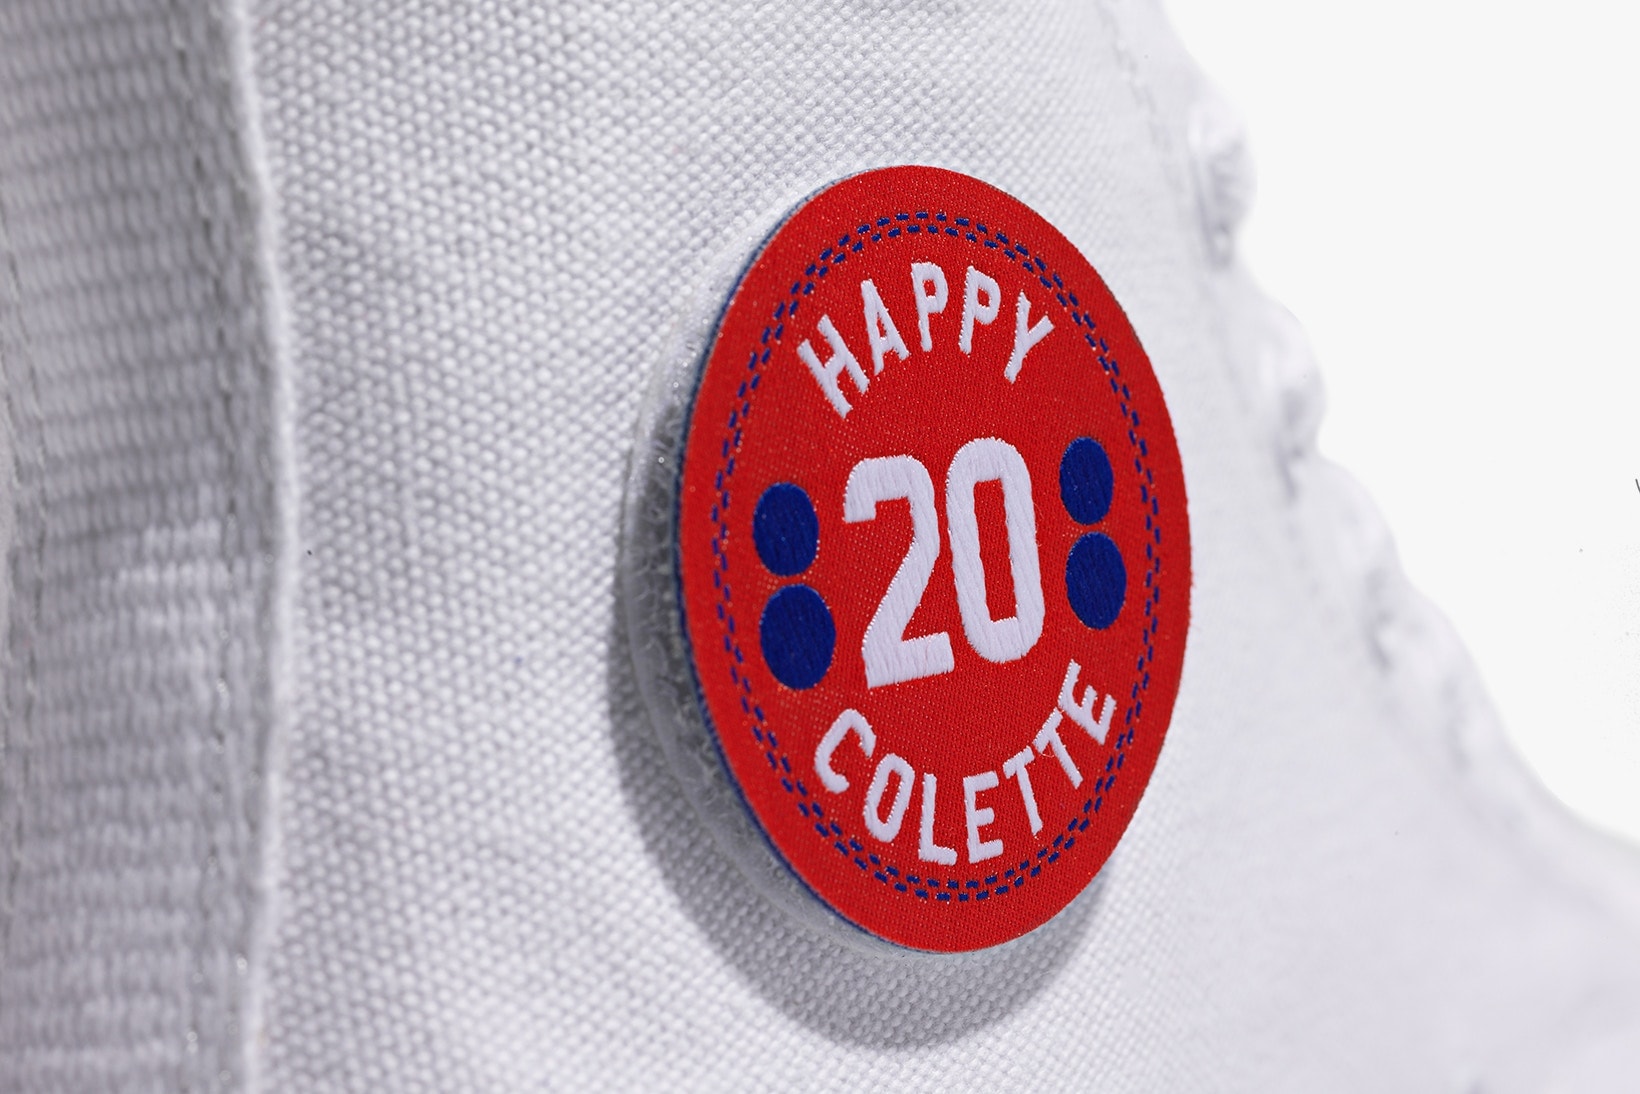 Converse colette Club 75 “Triple C” Collaboration